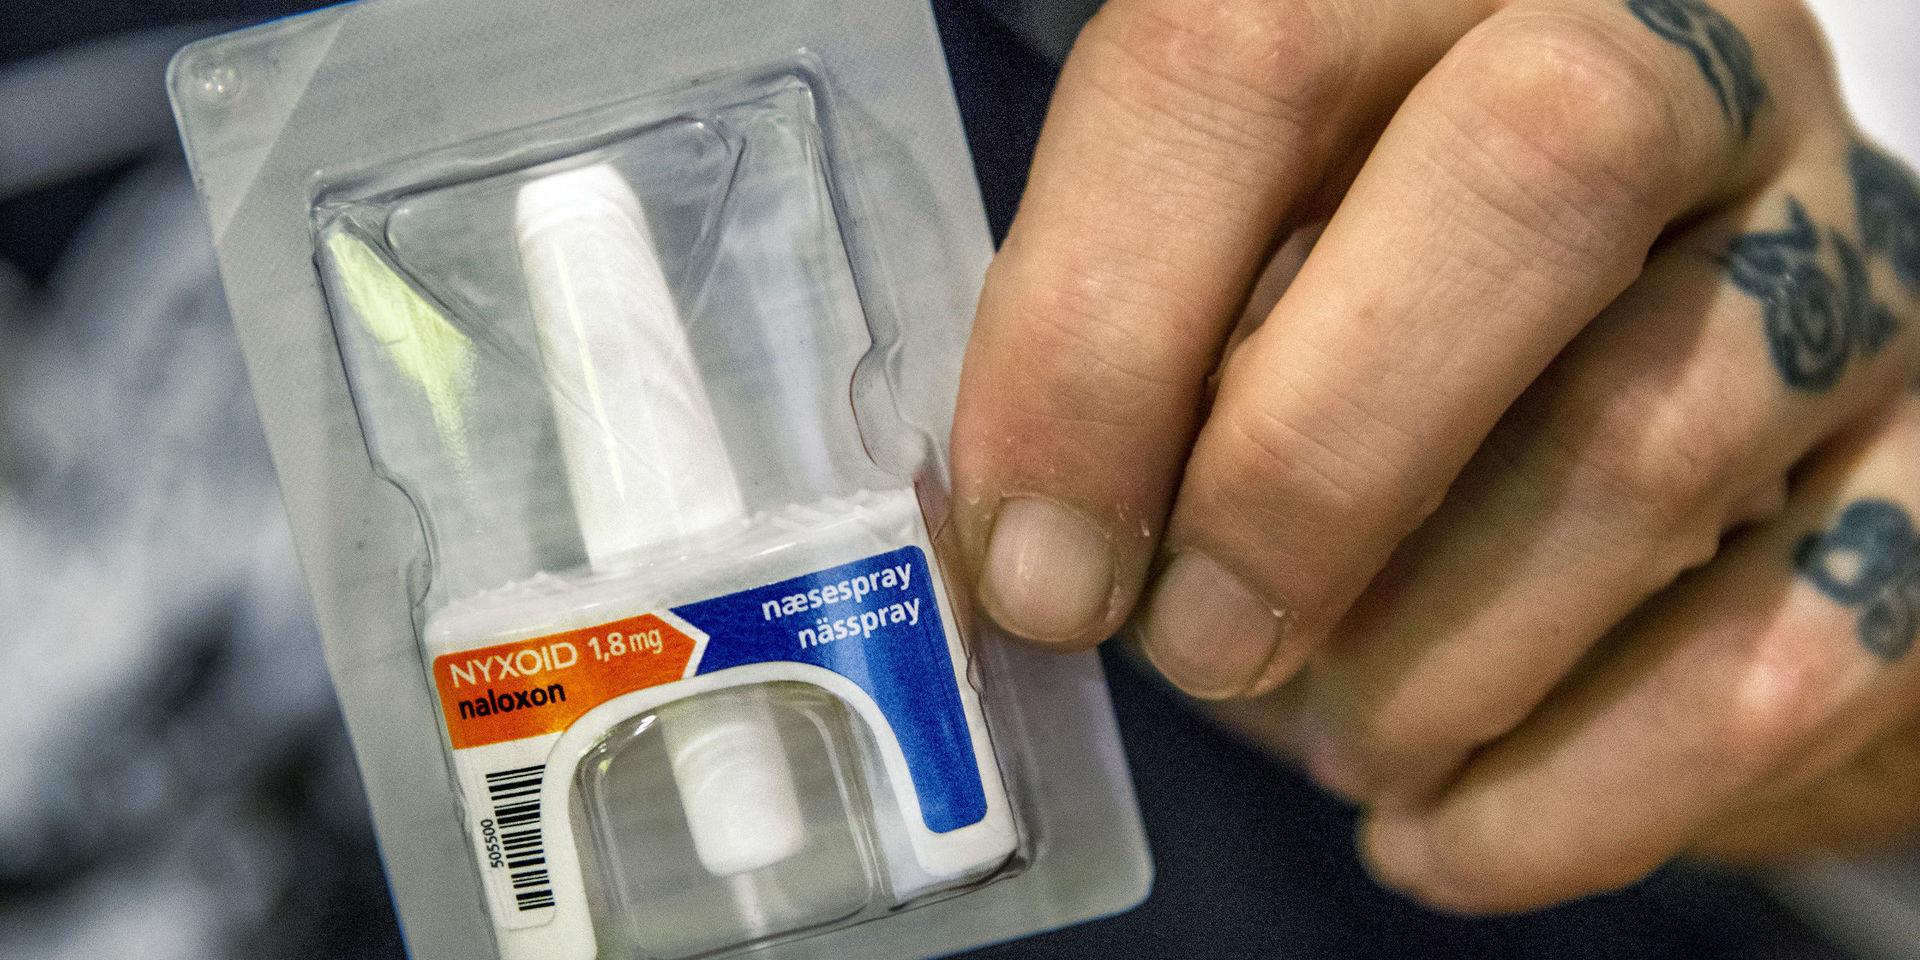 Naloxon kan häva dödliga överdoser hos narkotikamissbrukare. Naloxon som nässpray används i begränsad omfattning vid akuta fall i Göteborg, VG-regionen utreder nu om det kan delas ut mera brett.